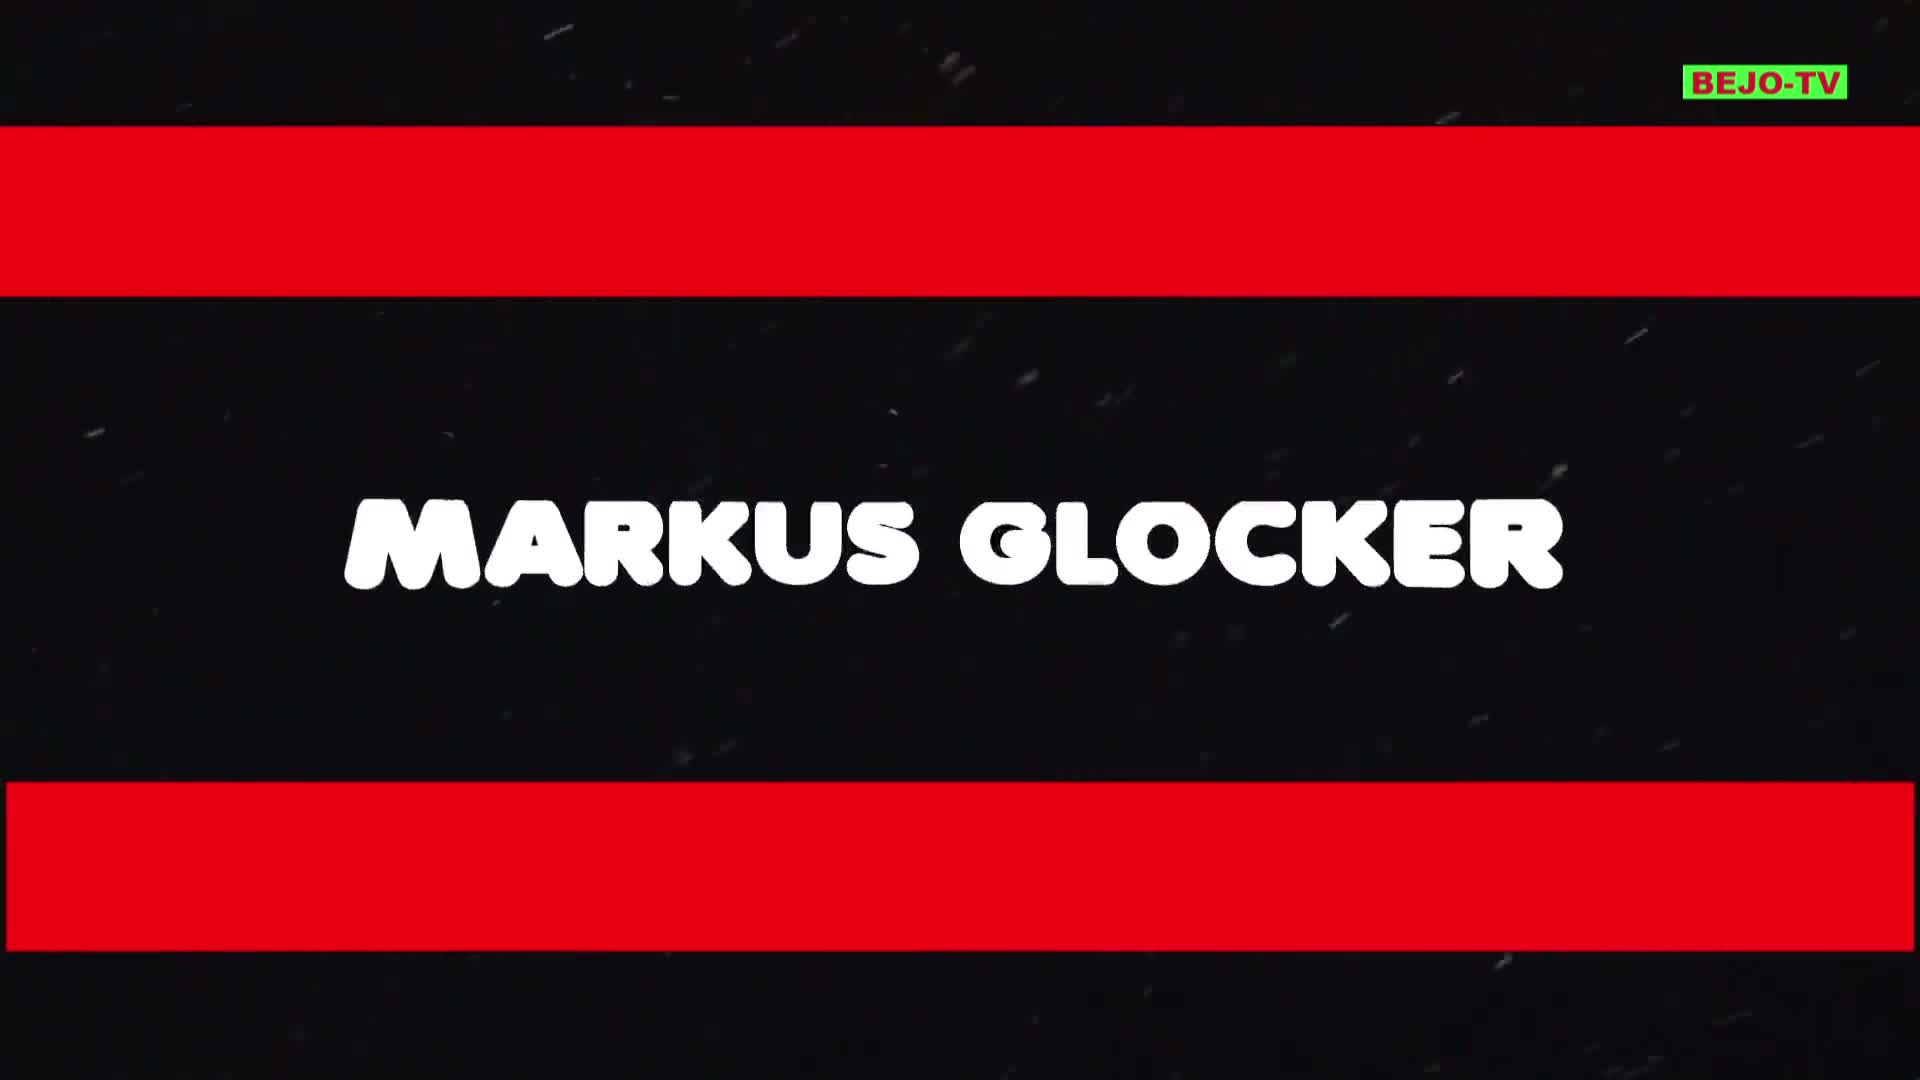 MARKUS GLOCKER - A STAR IS BORN